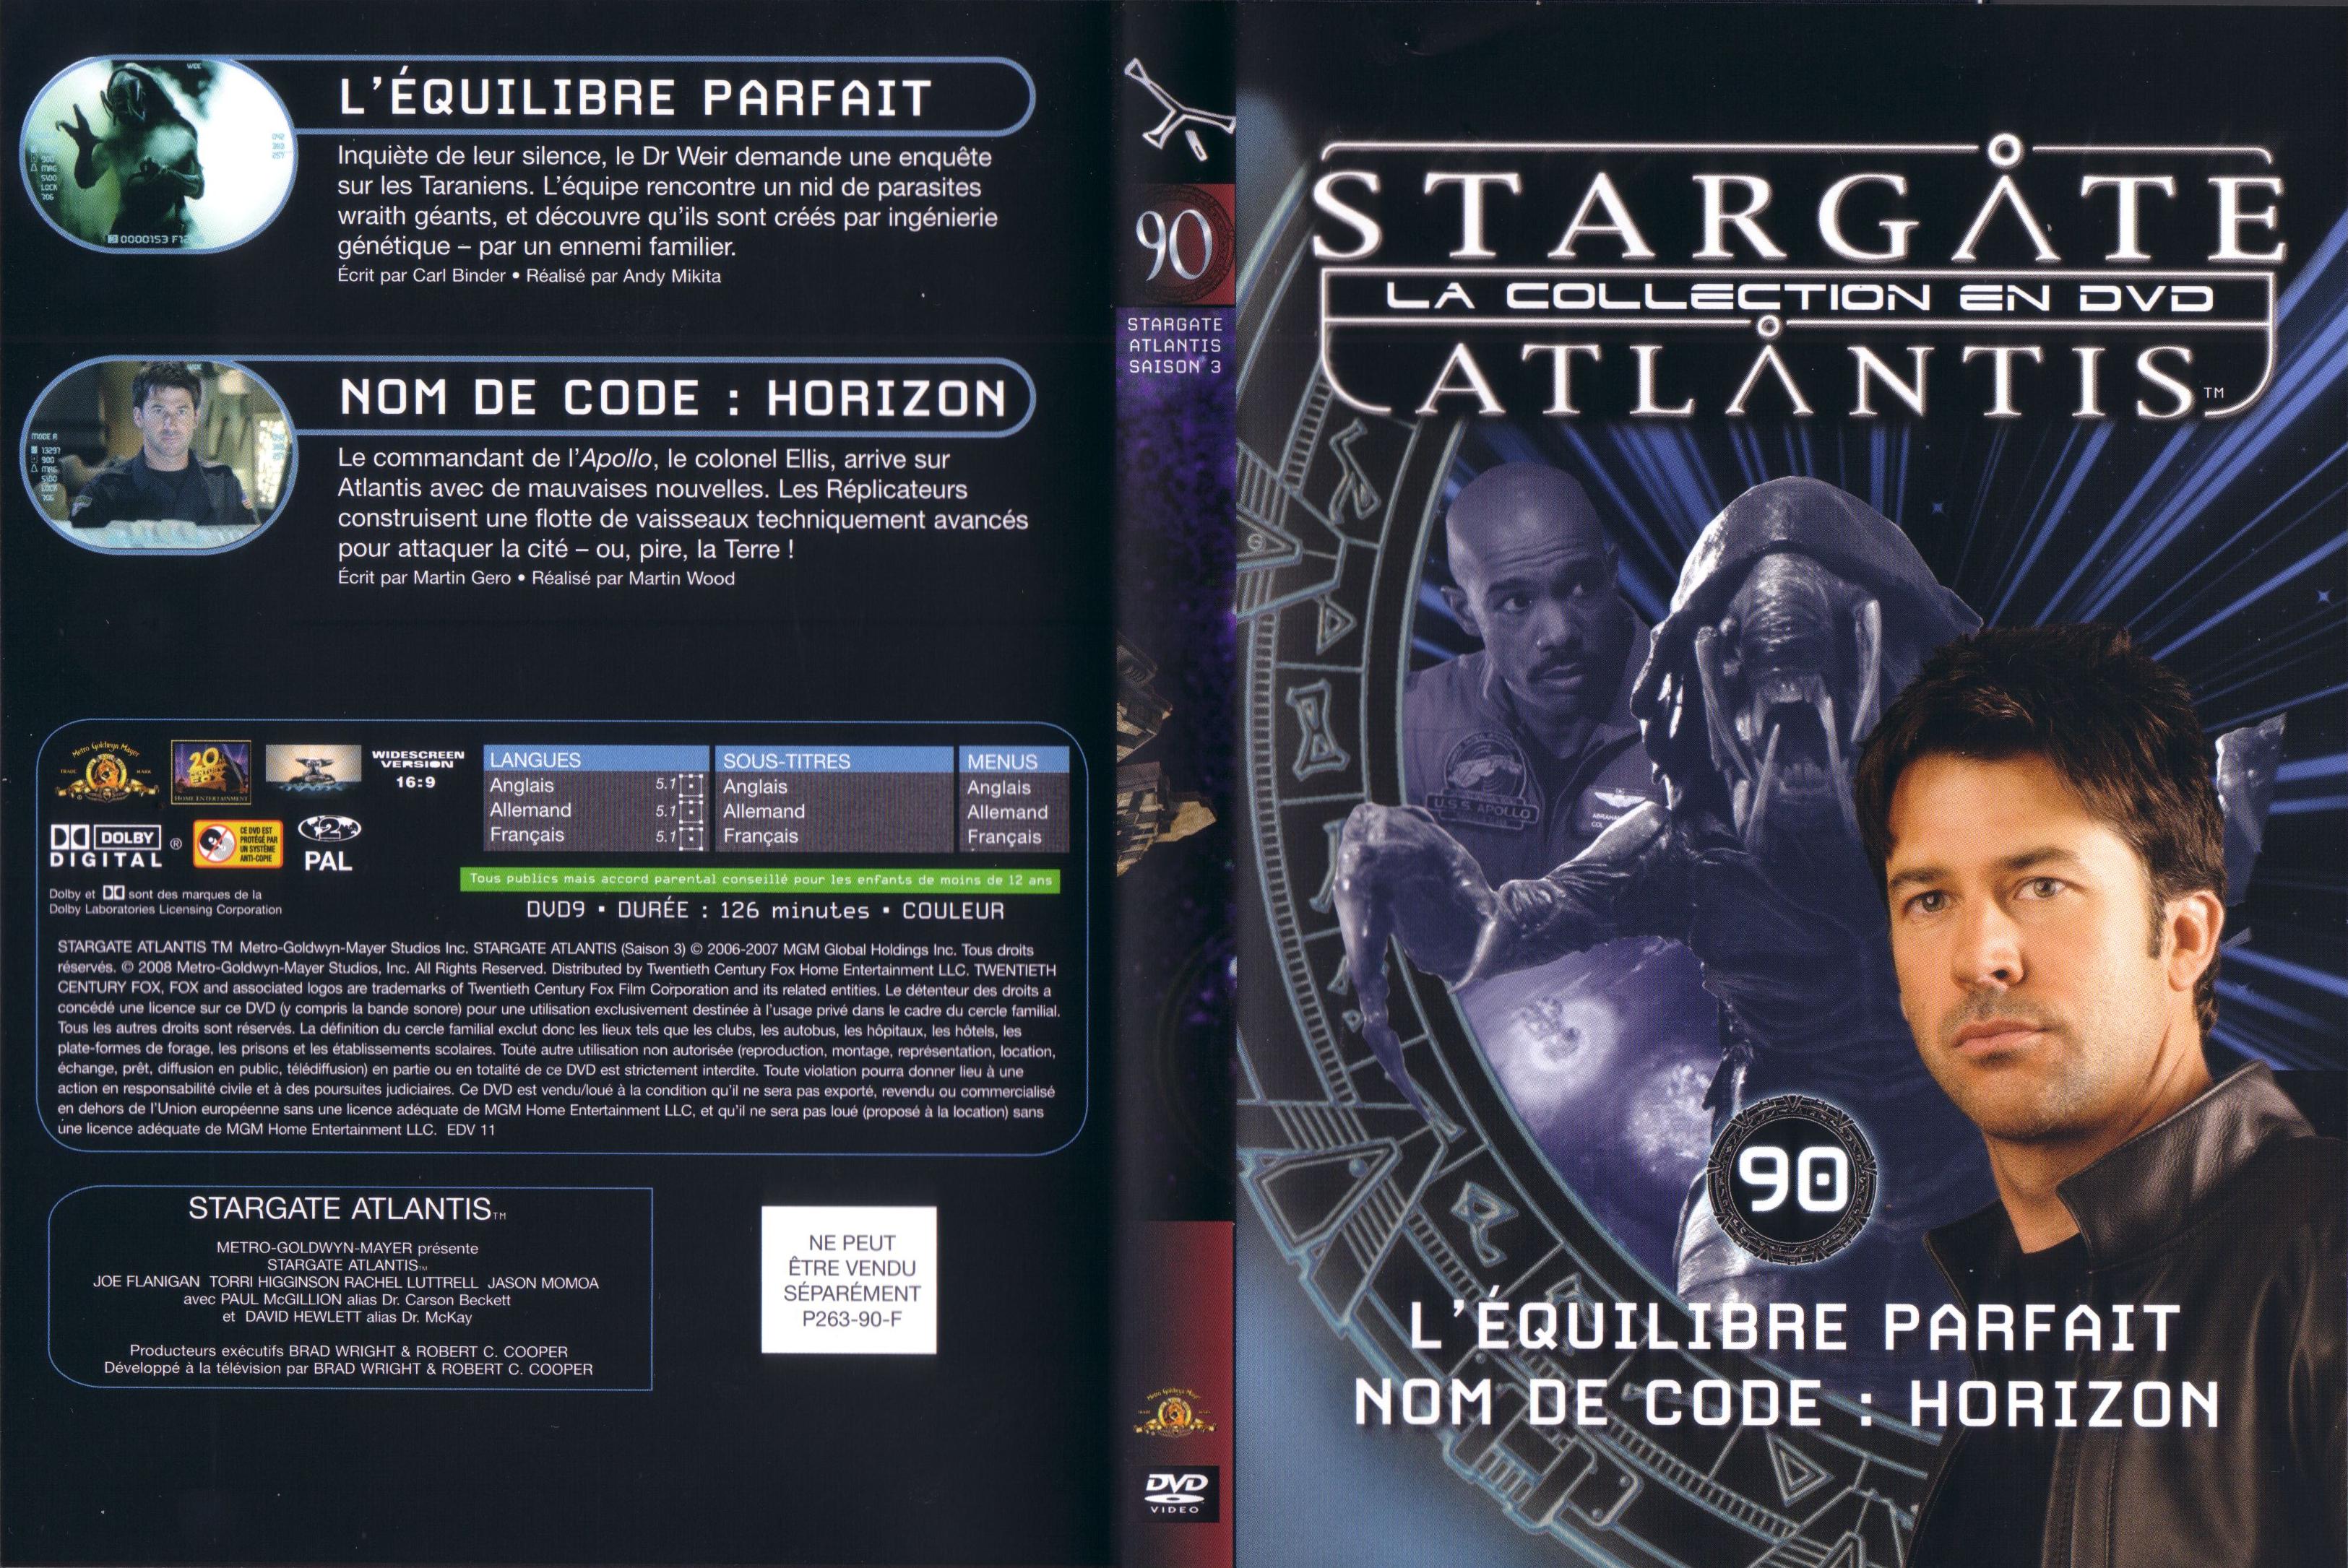 Jaquette DVD Stargate atlantis saison 3 vol 90